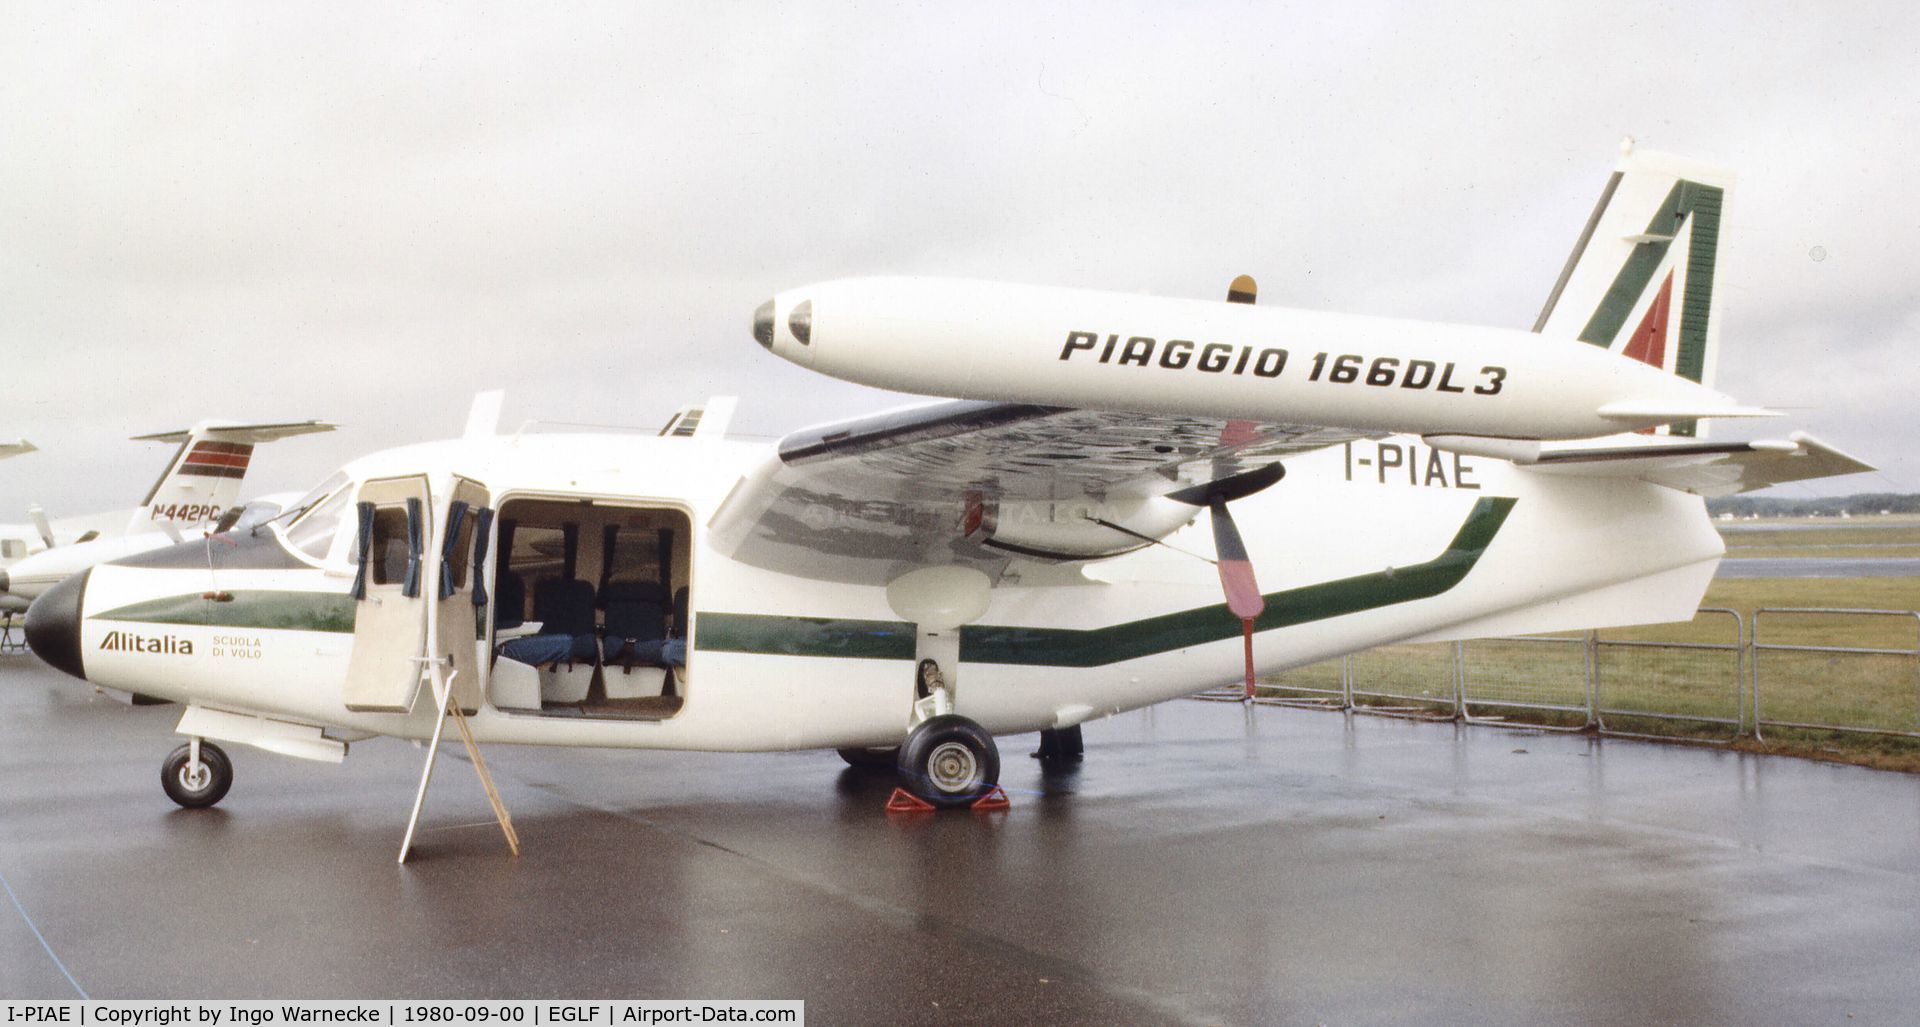 I-PIAE, 1978 Piaggio P-166DL-3 C/N 466, Piaggio P.166DL-3 of Alitalia Scuola di Volo (Flying School) at Farnborough International 1980